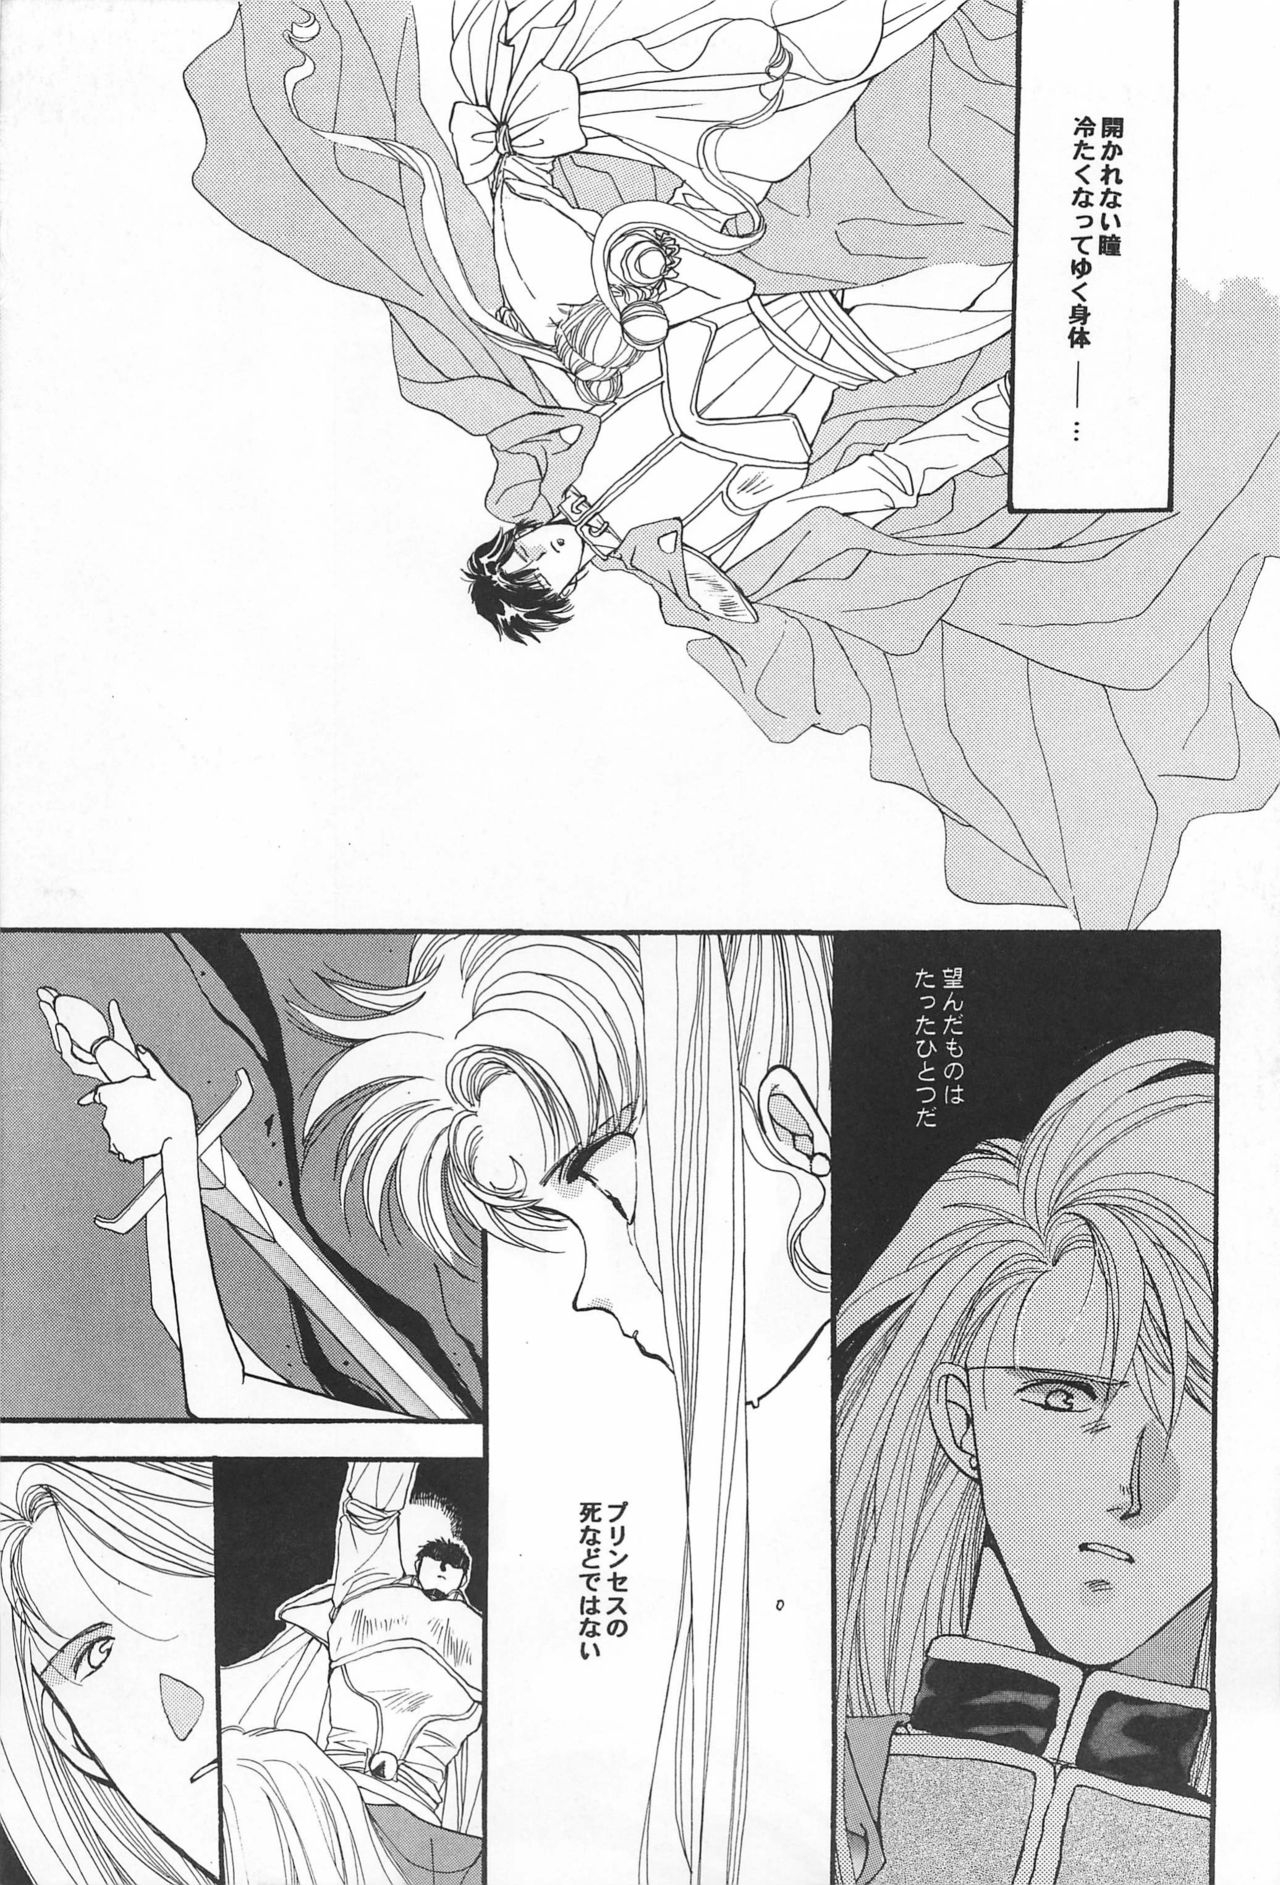 [Hello World (Muttri Moony)] Kaze no You ni Yume no You ni - Sailor Moon Collection (Sailor Moon) 14